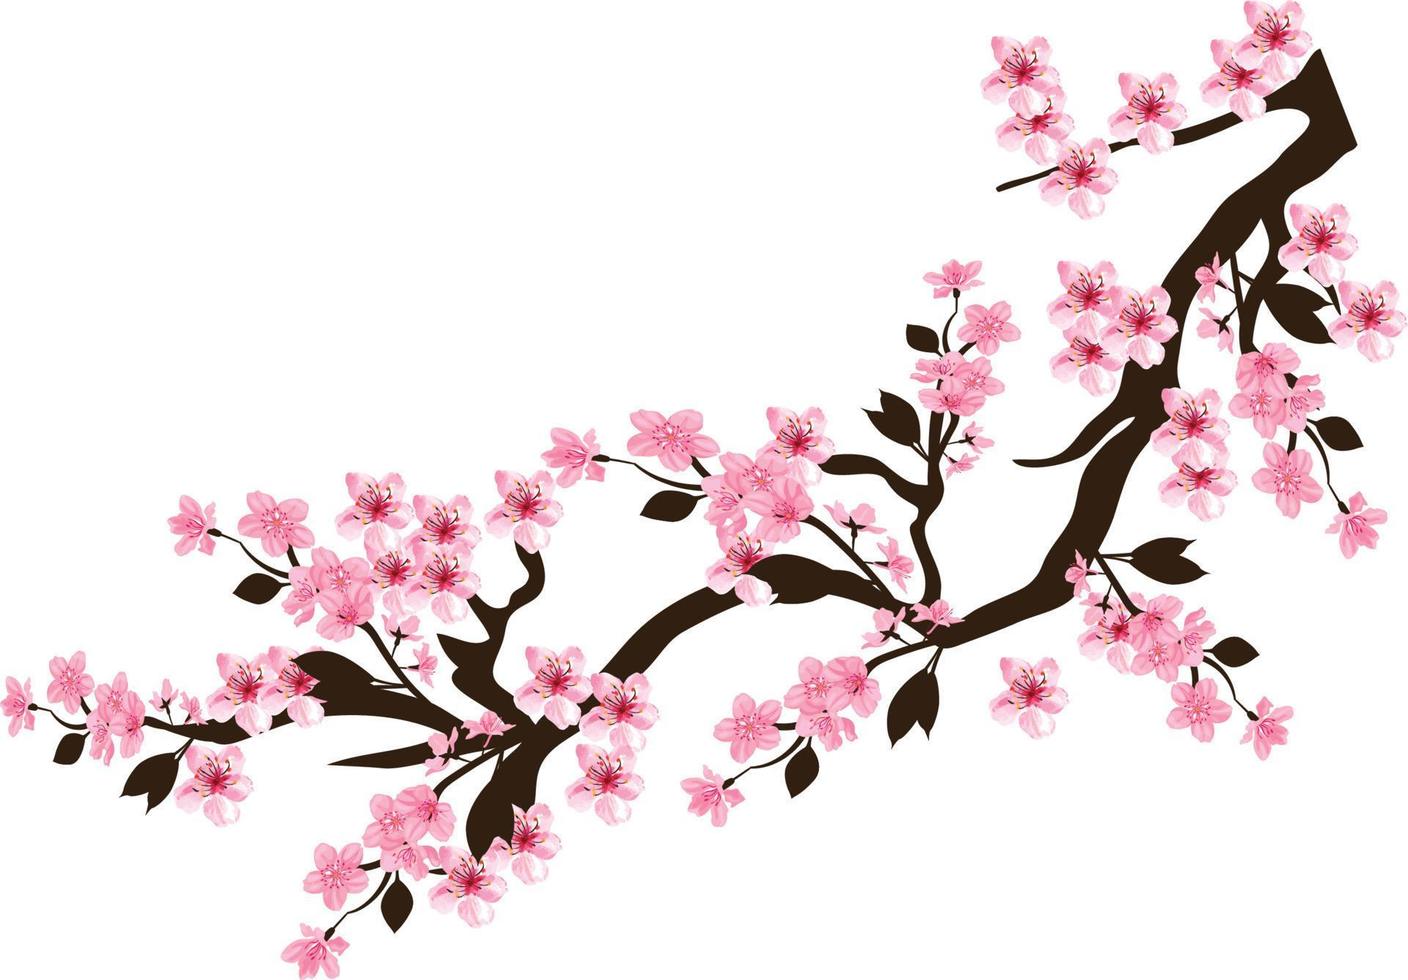 fond de vecteur libre fleur de cerisier